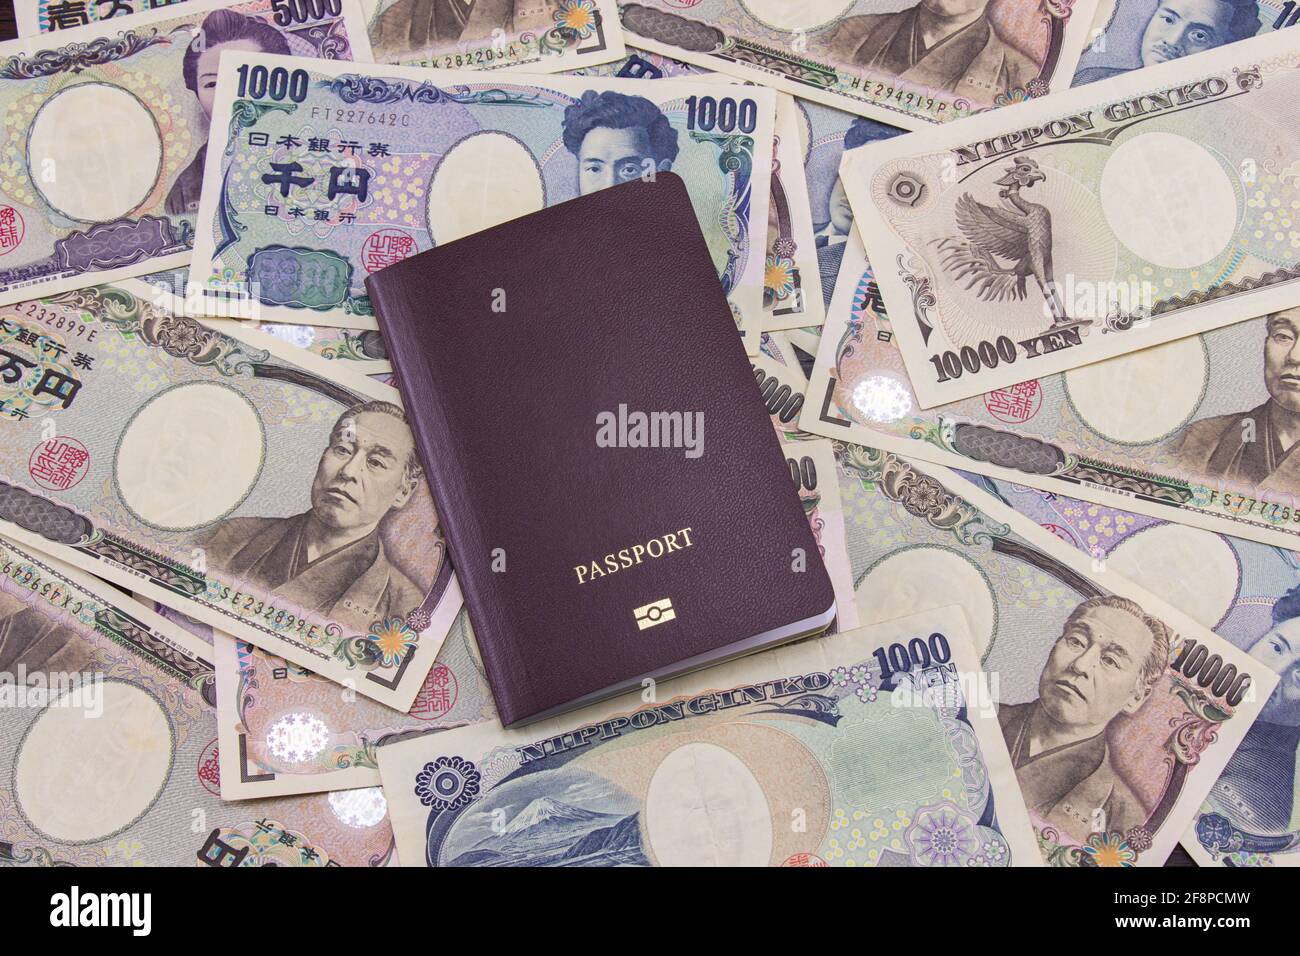 Passaporto internazionale sulle note di valuta giapponese contesto, affari finanziari di moneta giapponese. Foto Stock